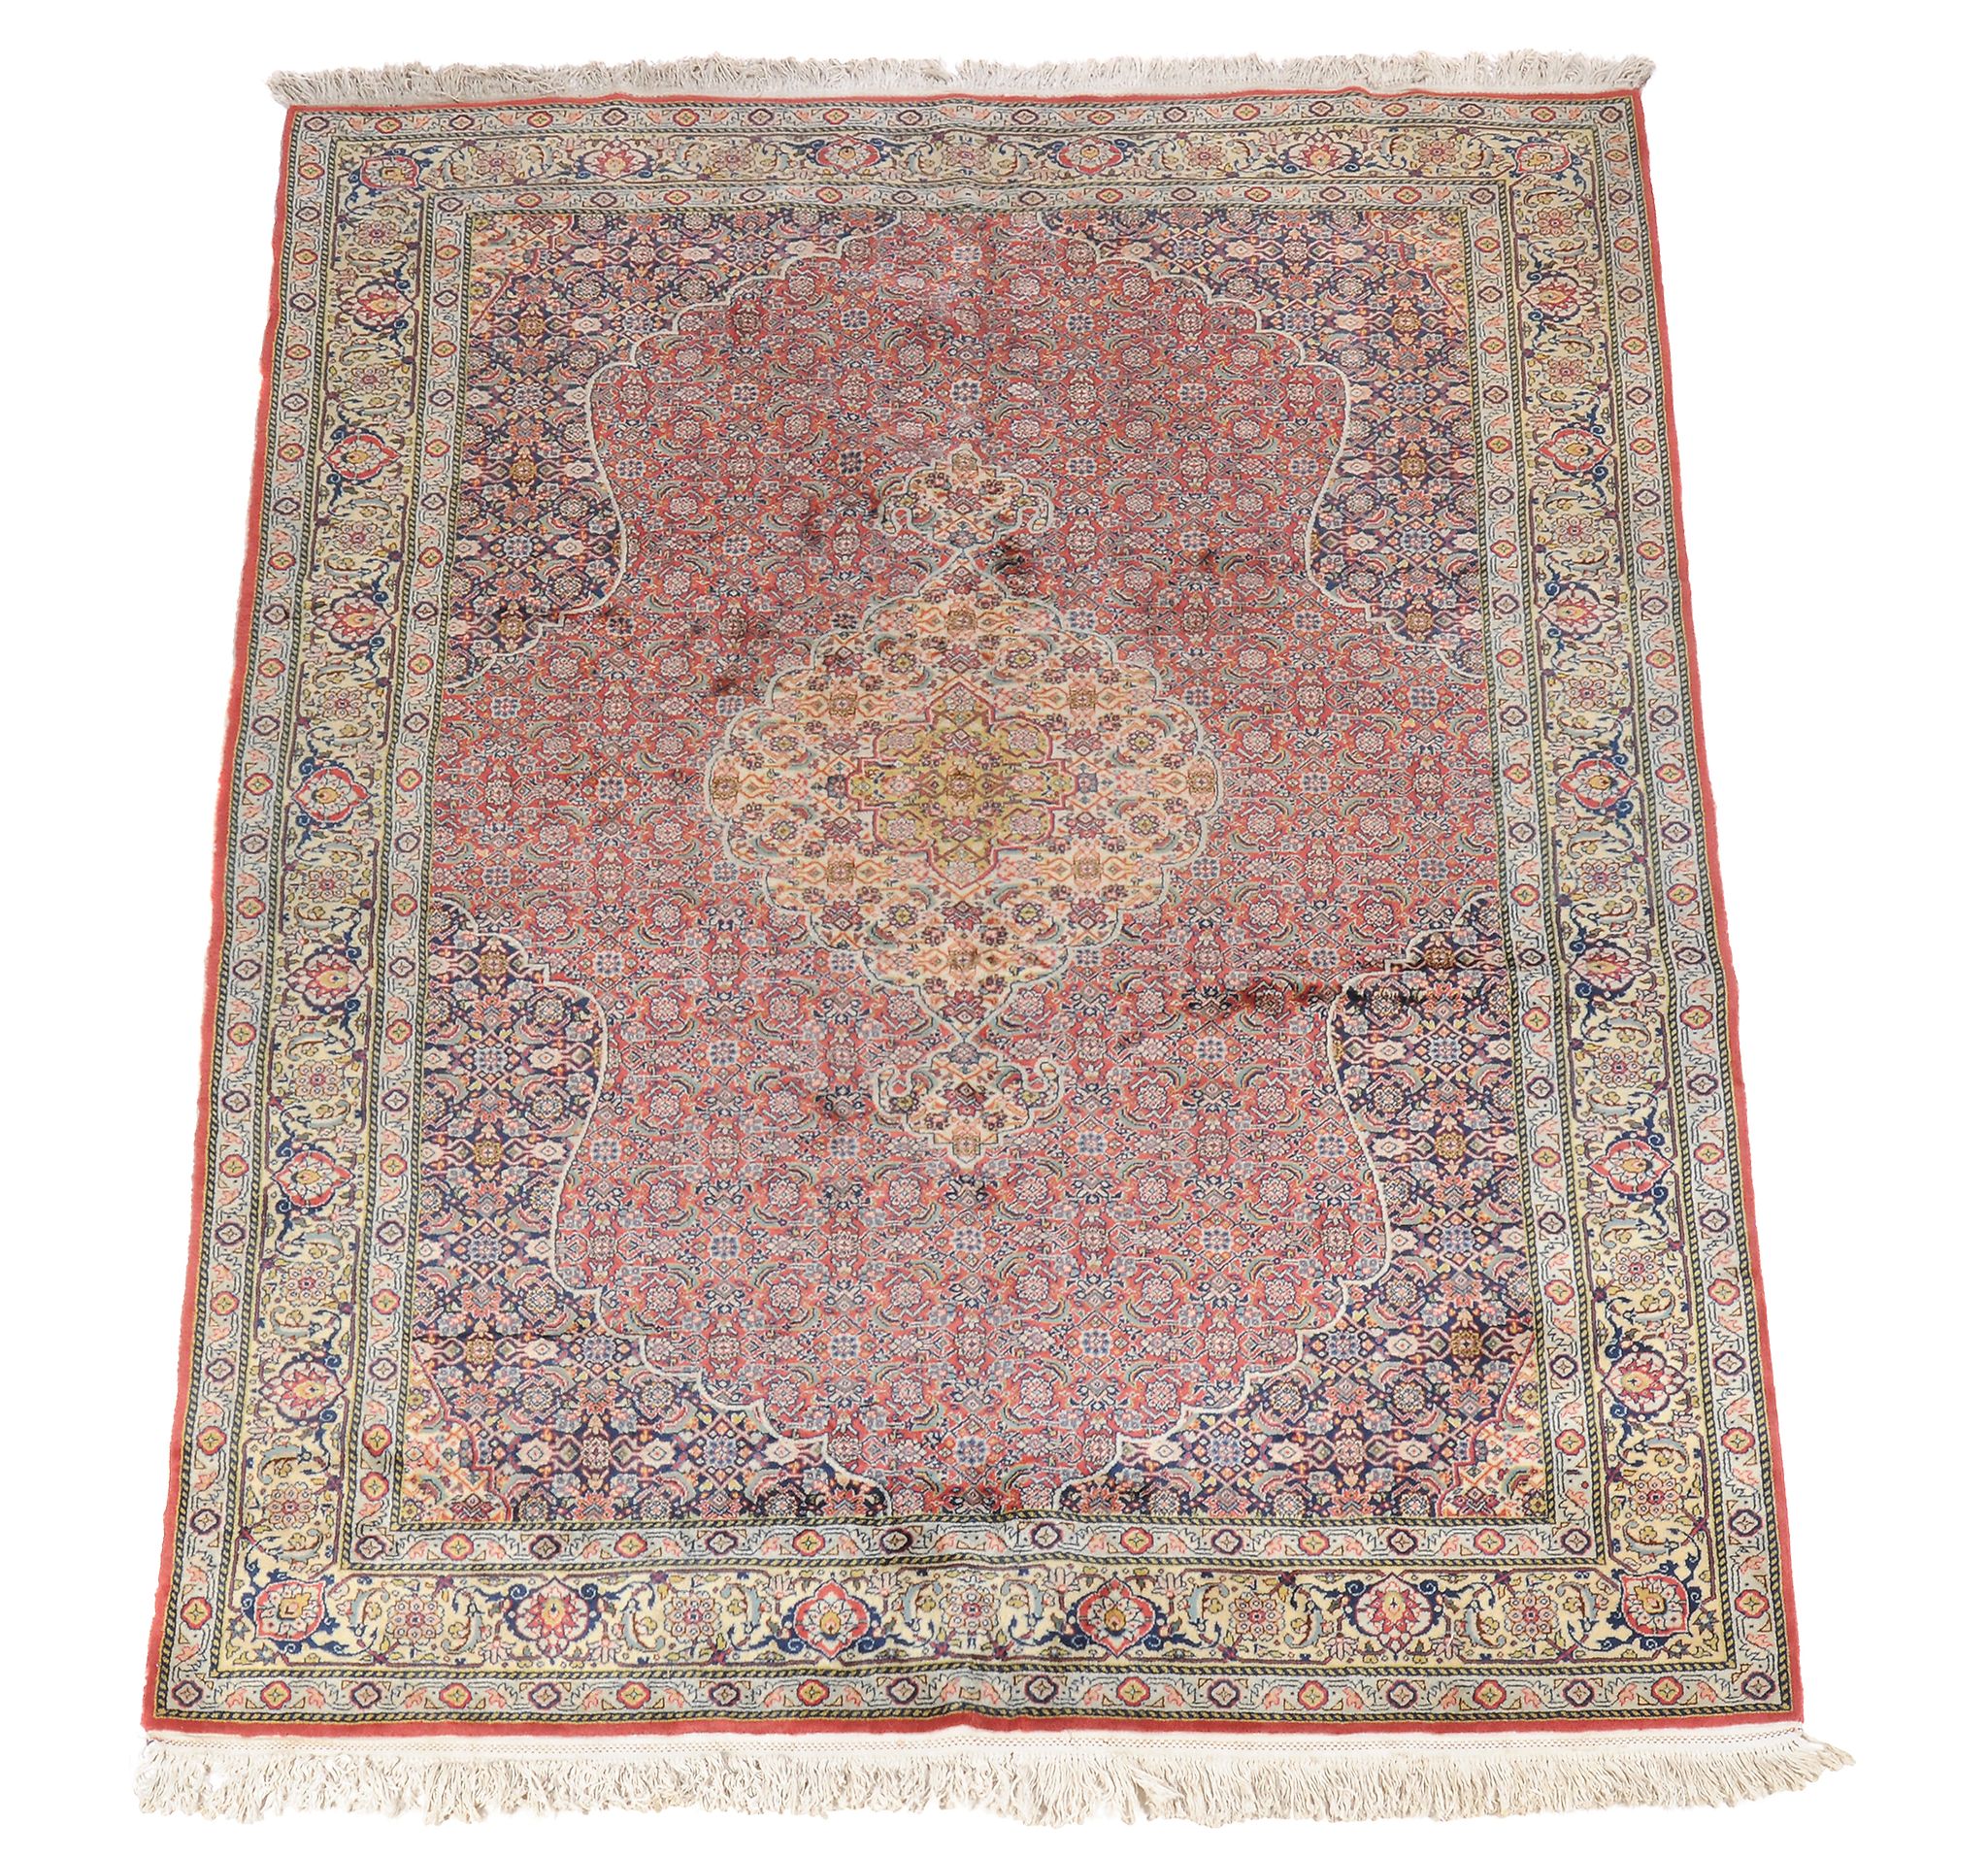 A Tabriz carpet , approximately 298 x 199cm